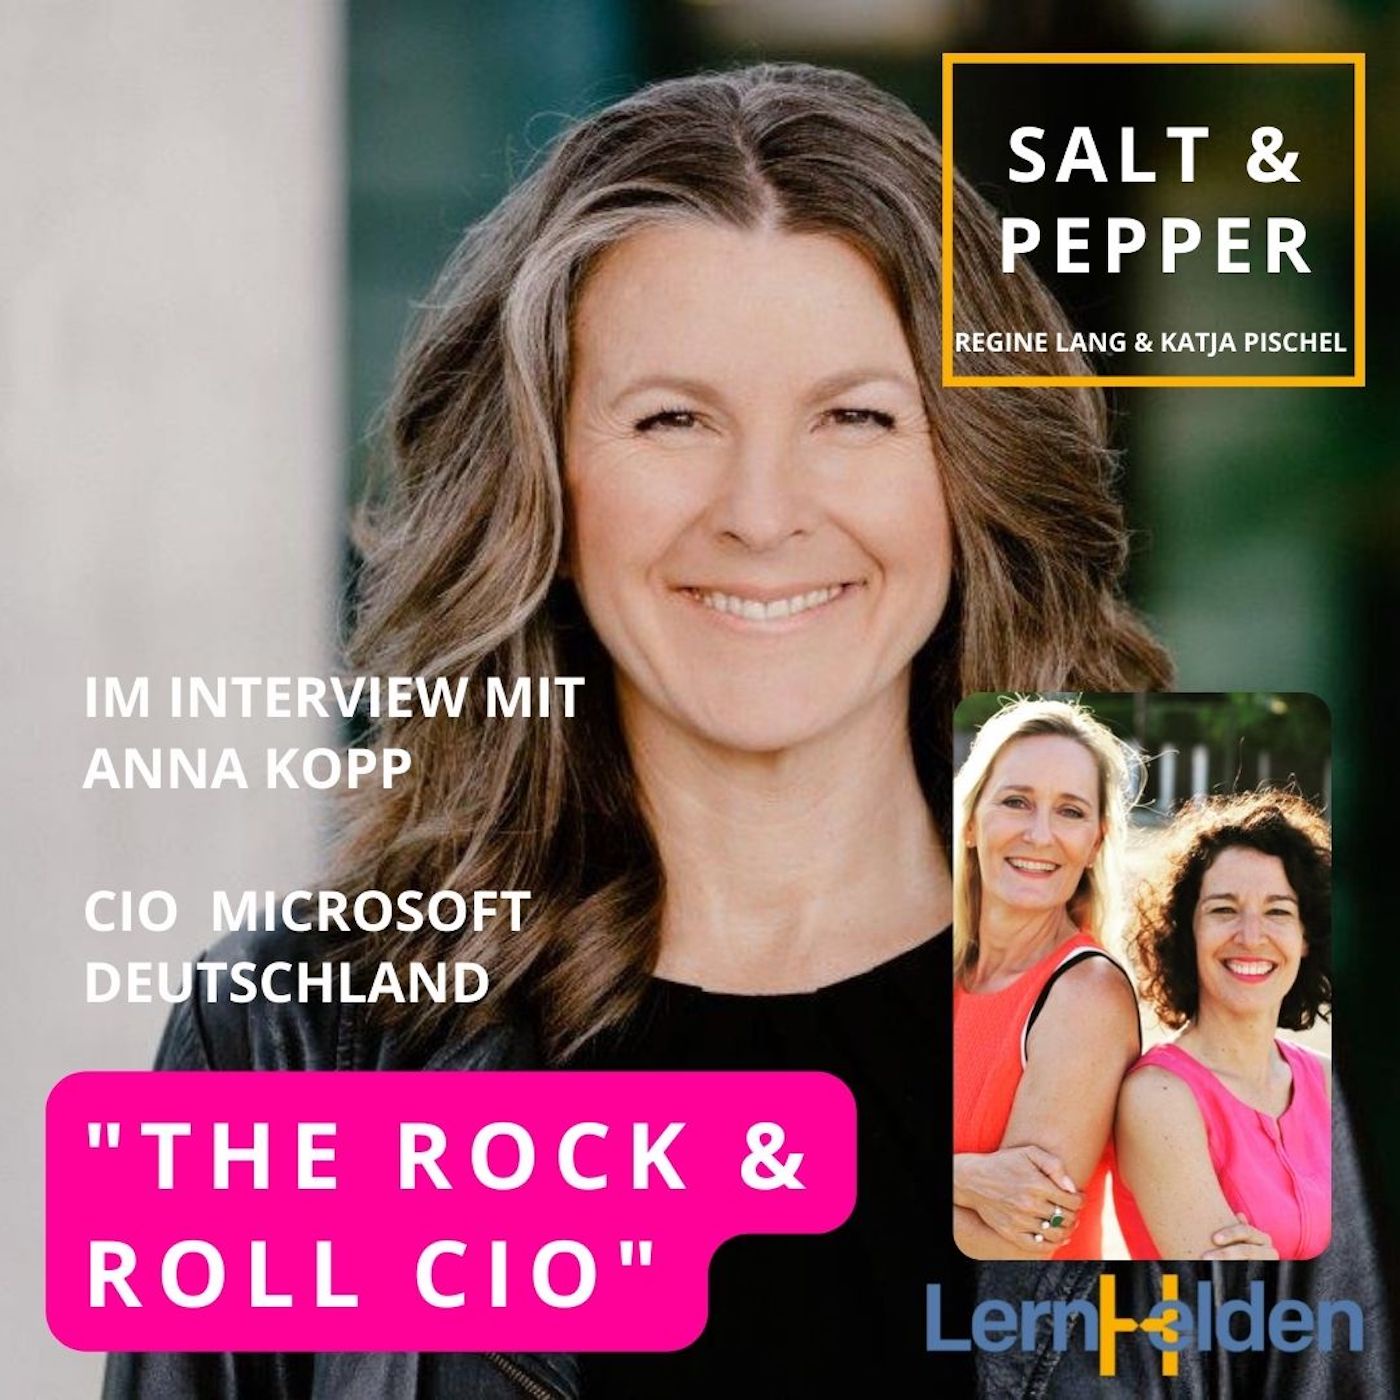 The Rock and Roll CIO von Microsoft Deutschland